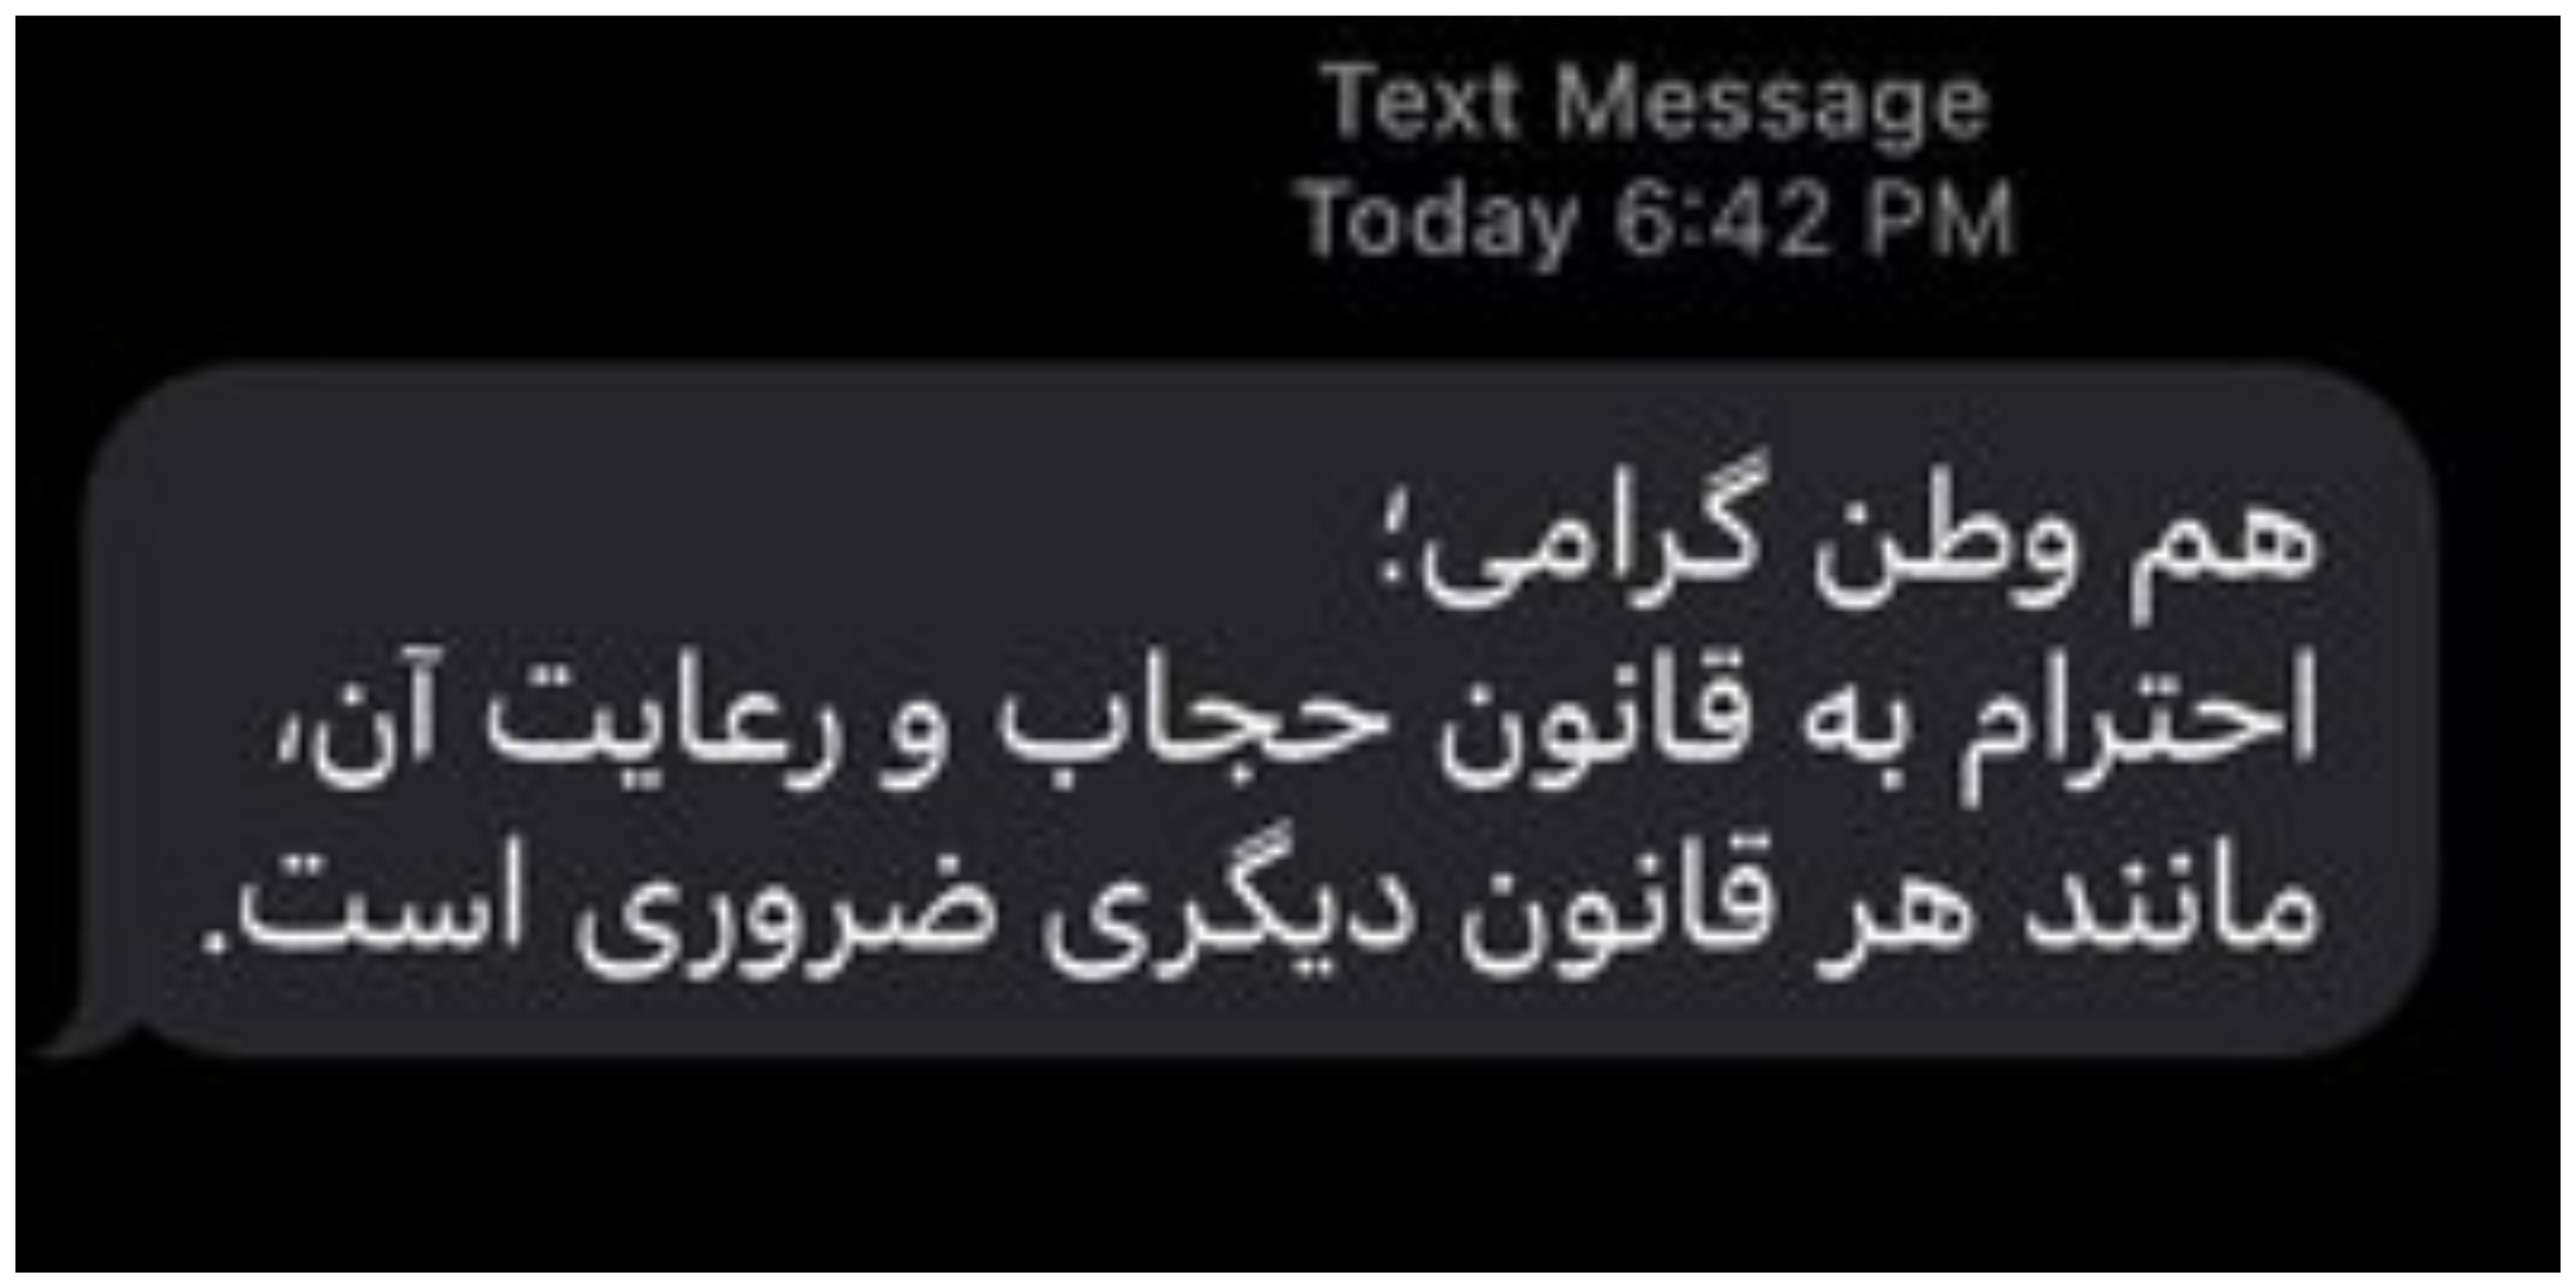 پیام معنادار عباسی عبدی درباره ارسال پیامک حجاب